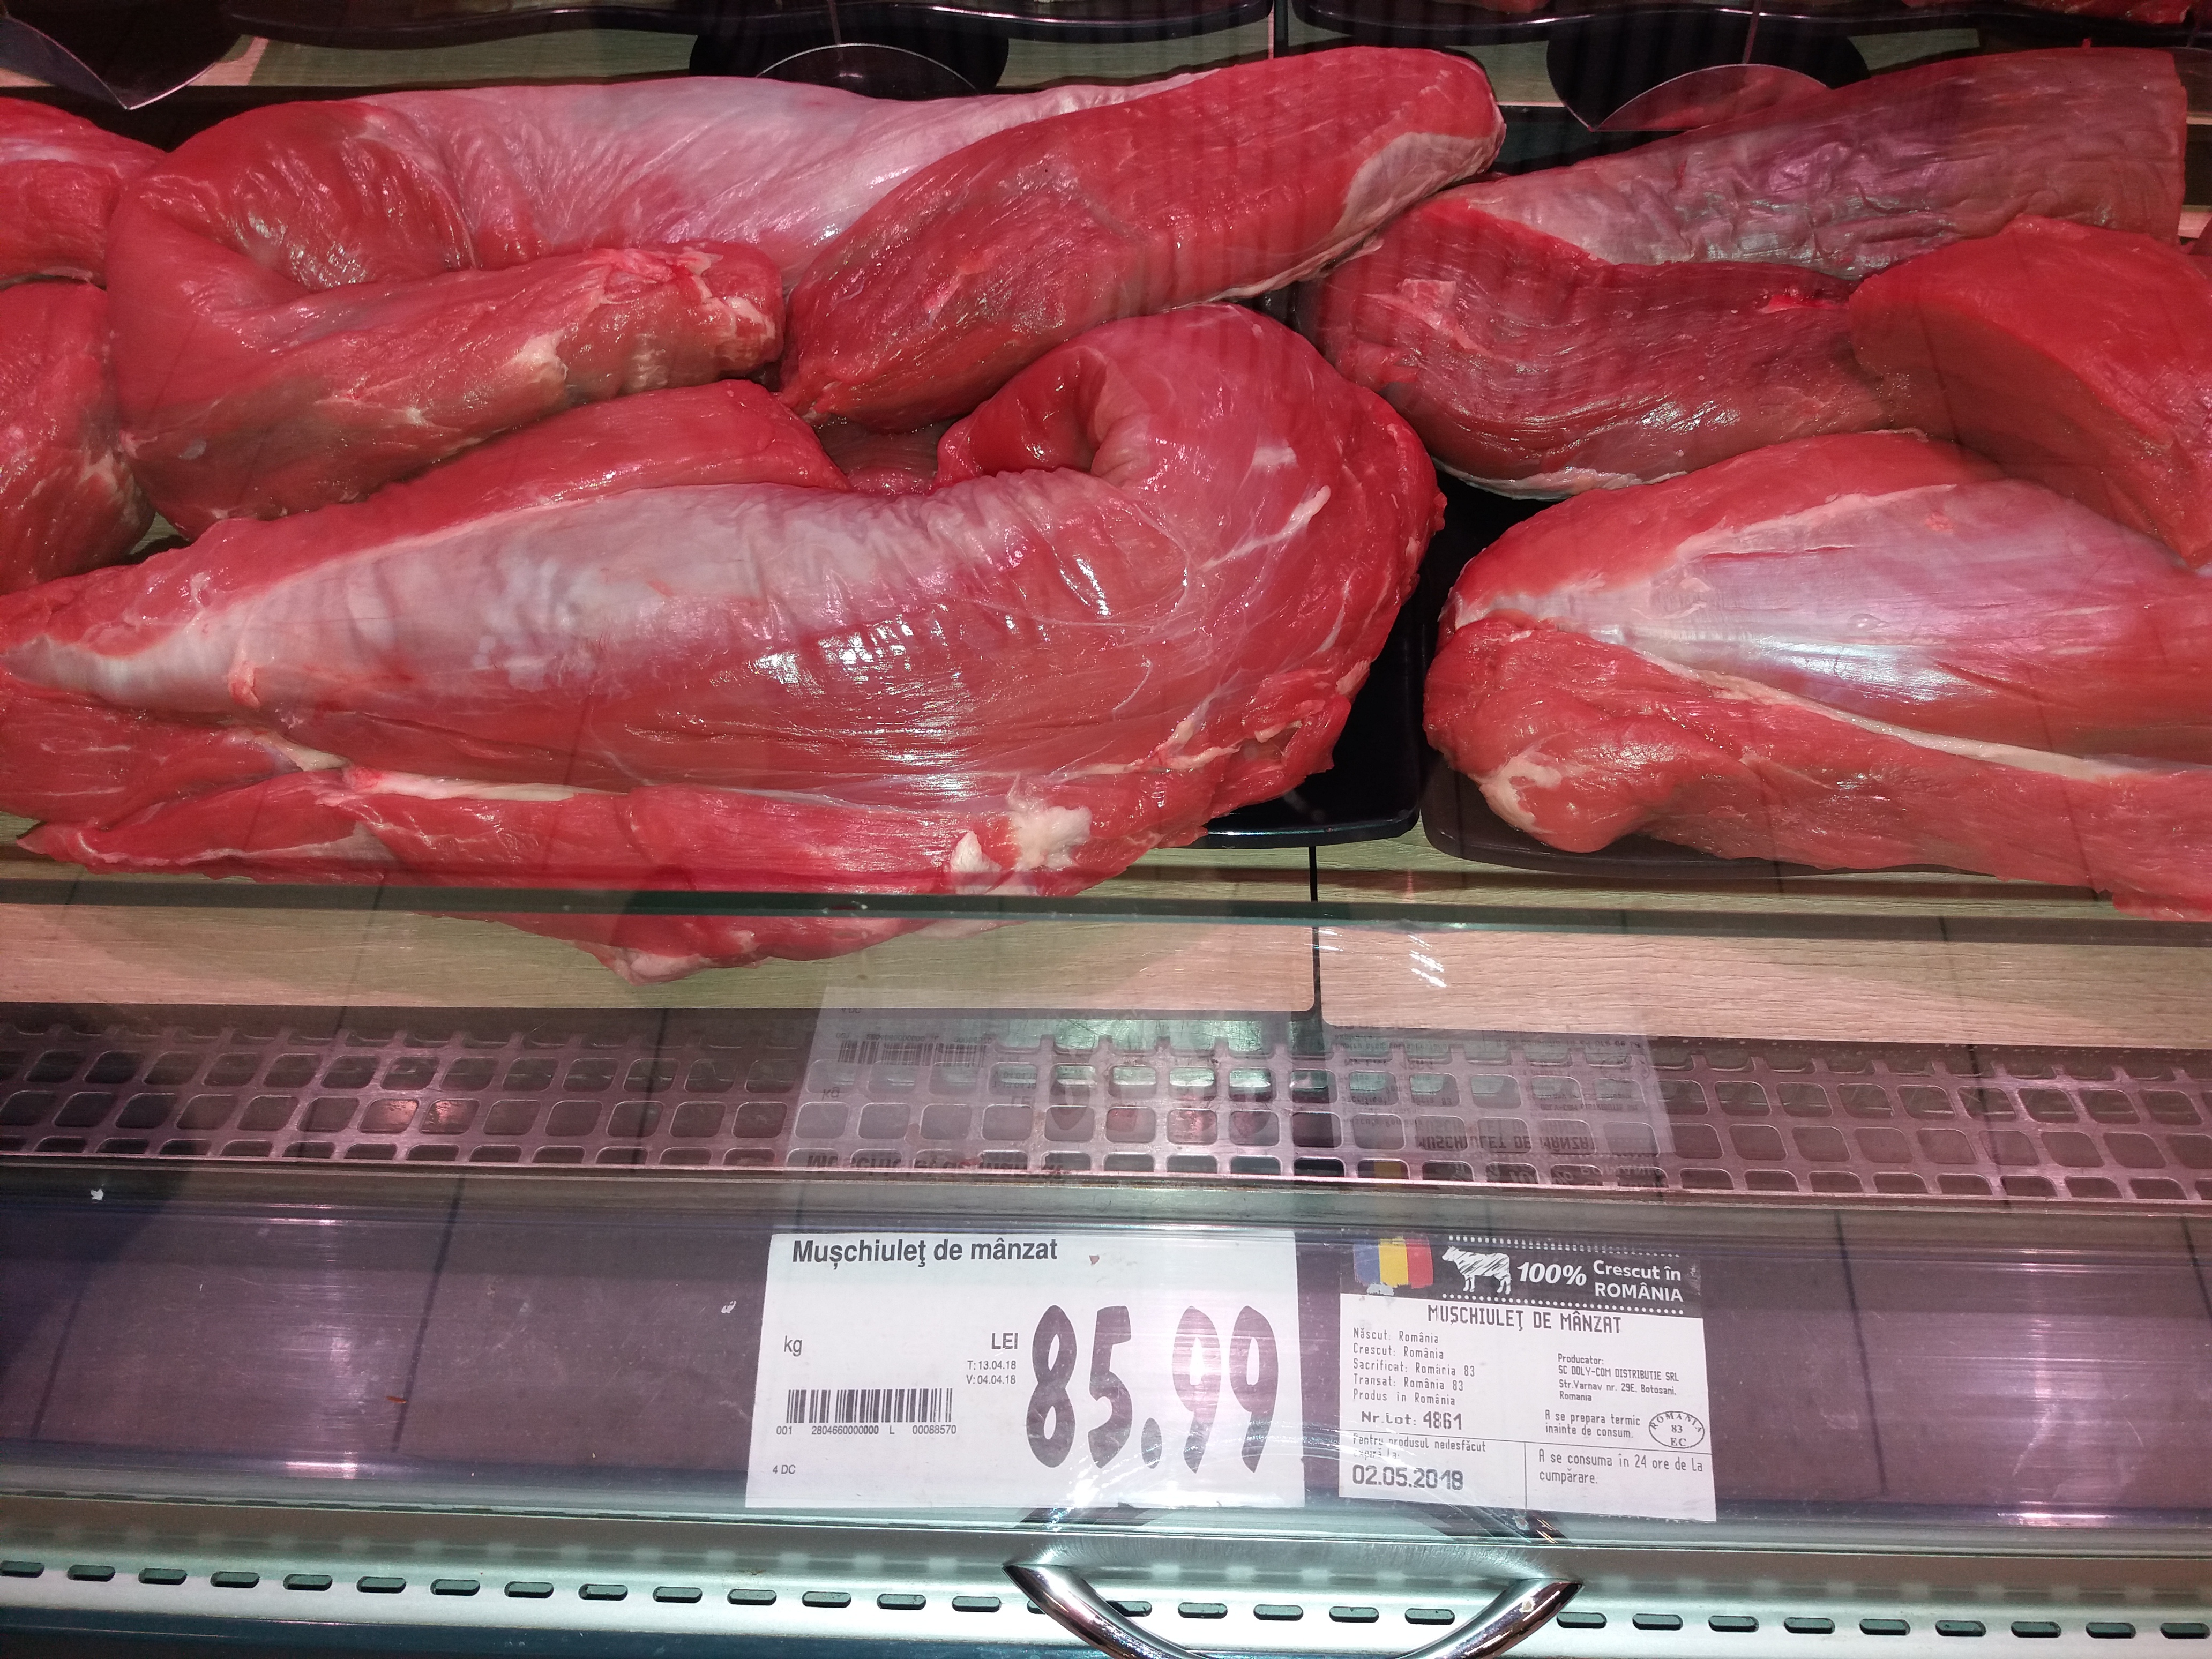 Muşchiuleţul de mânzat a ajuns la 85 lei/kg în marile lanţuri de magazine. Ministrul Agriculturii: „Sunt preţuri care, evident, nu sunt accesibile pentru orice om”